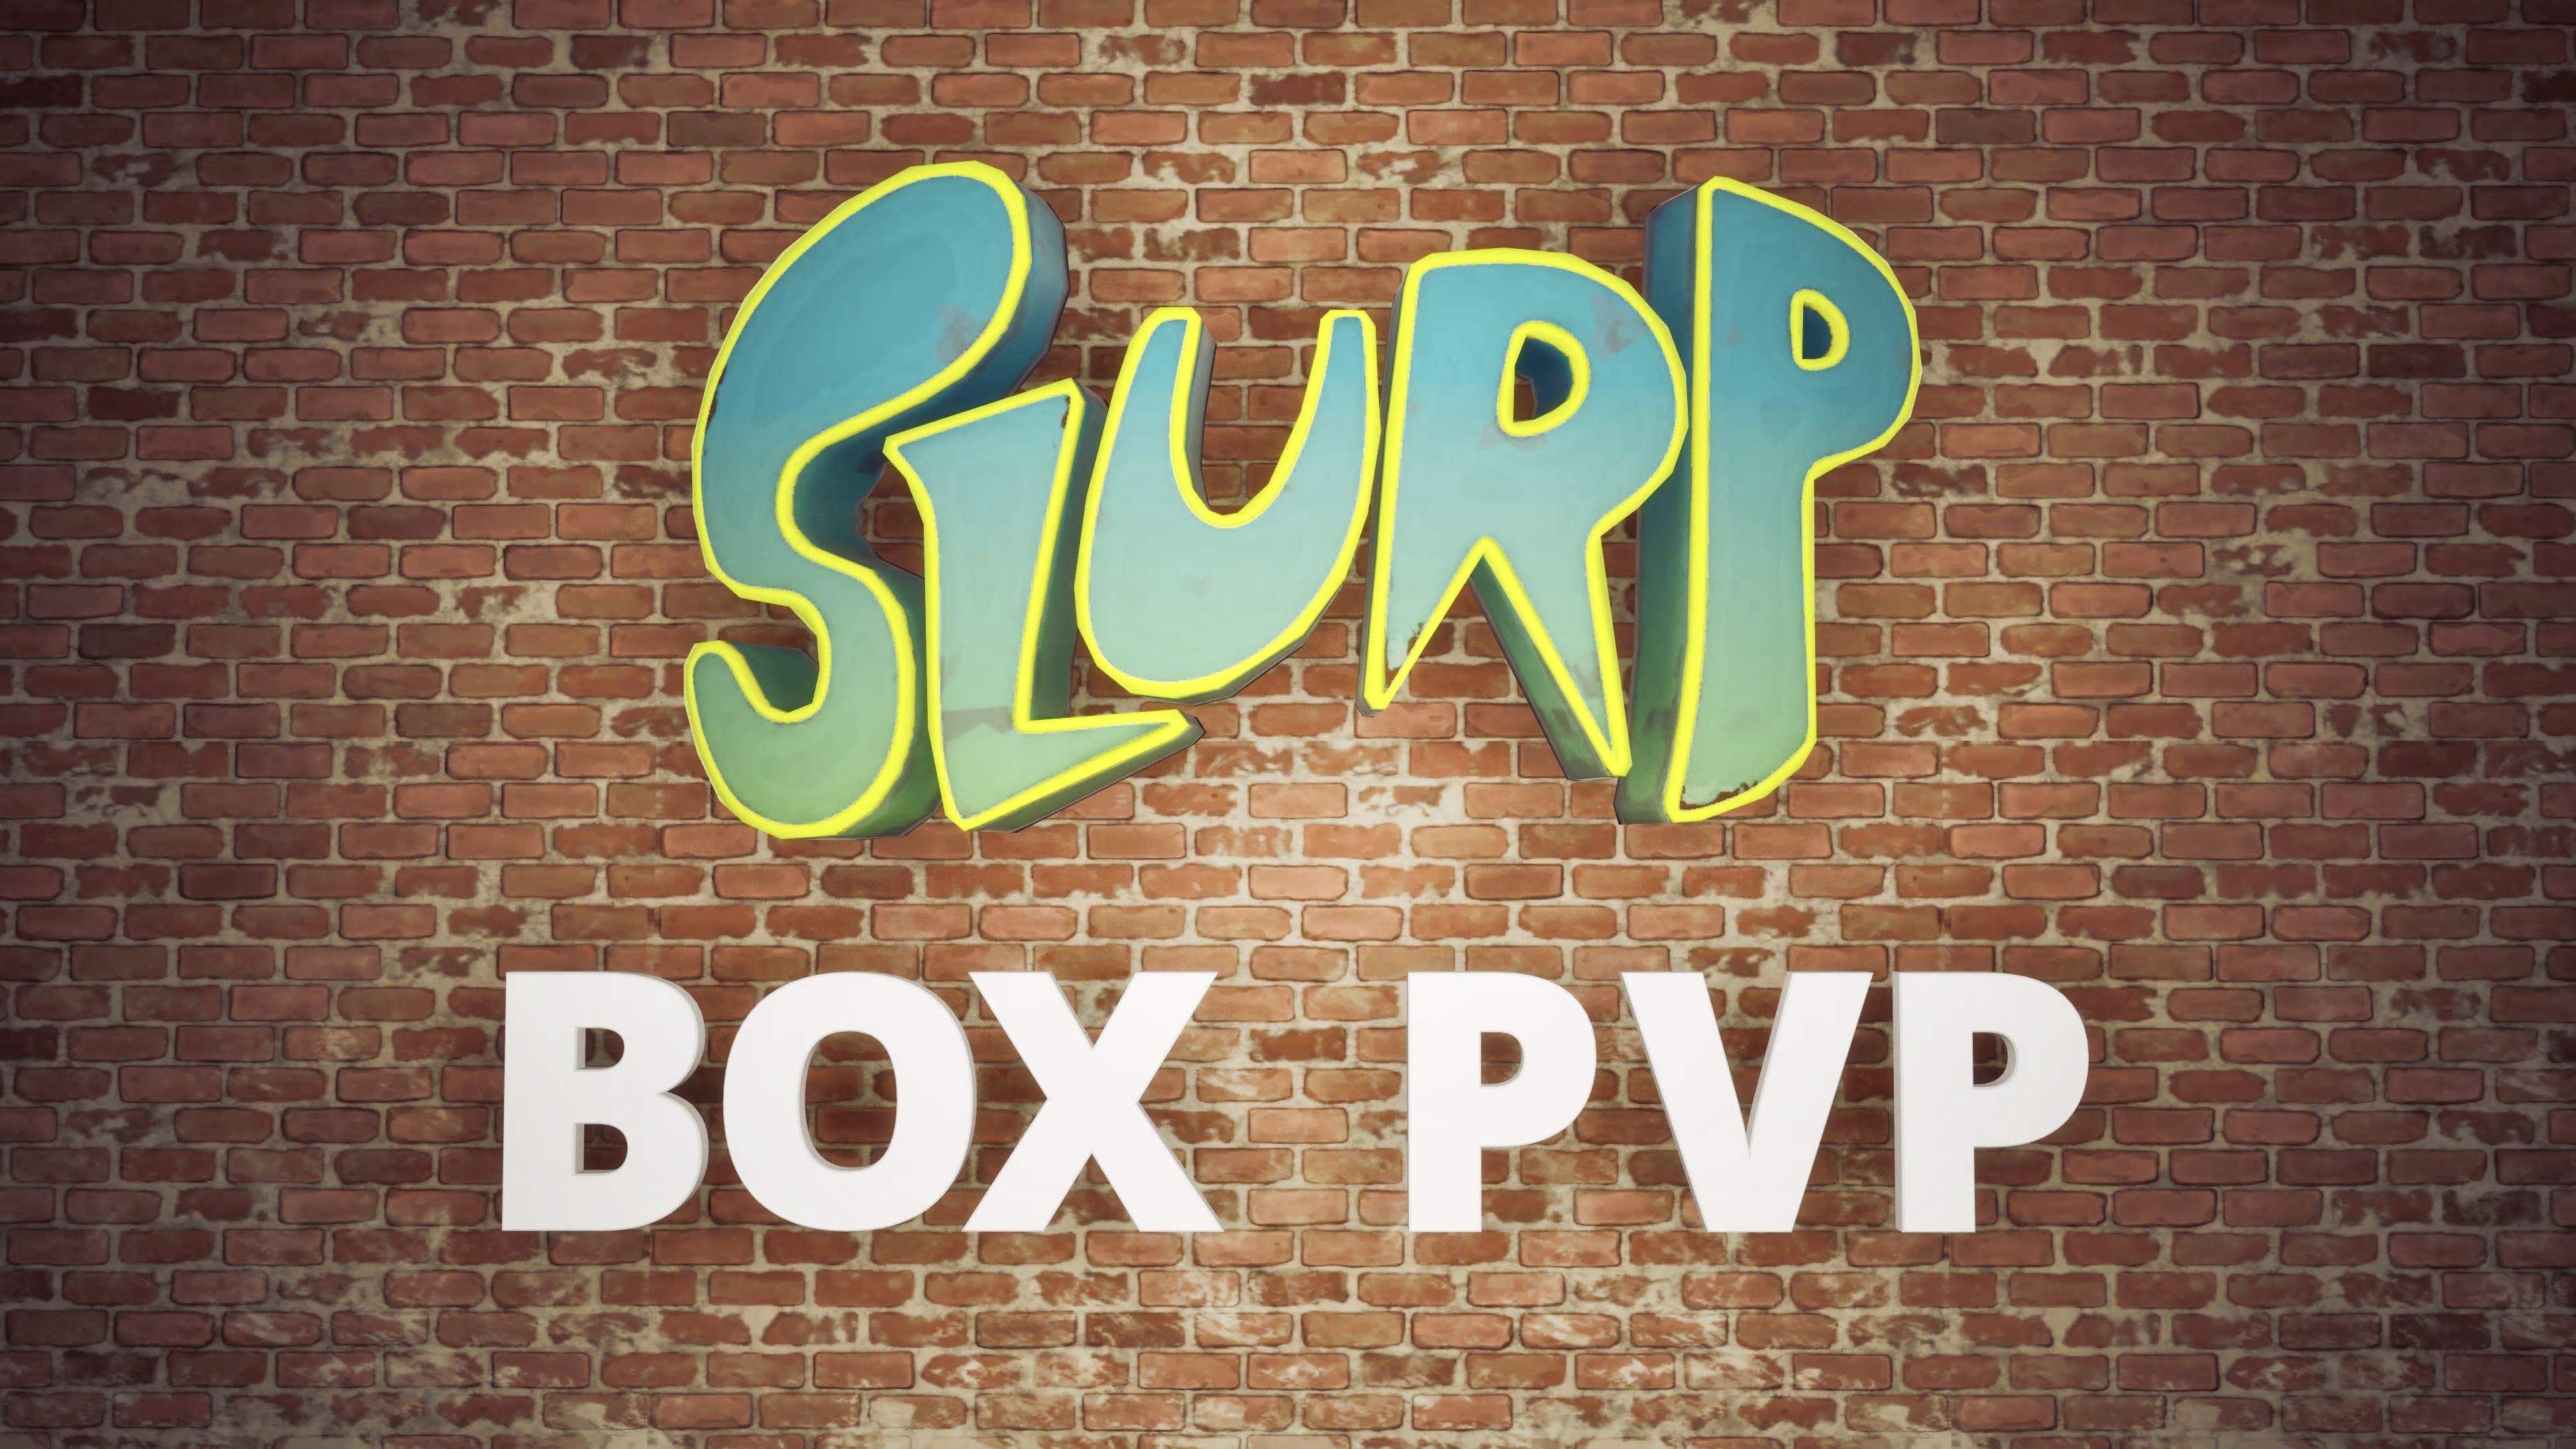 SLURP BOX PVP